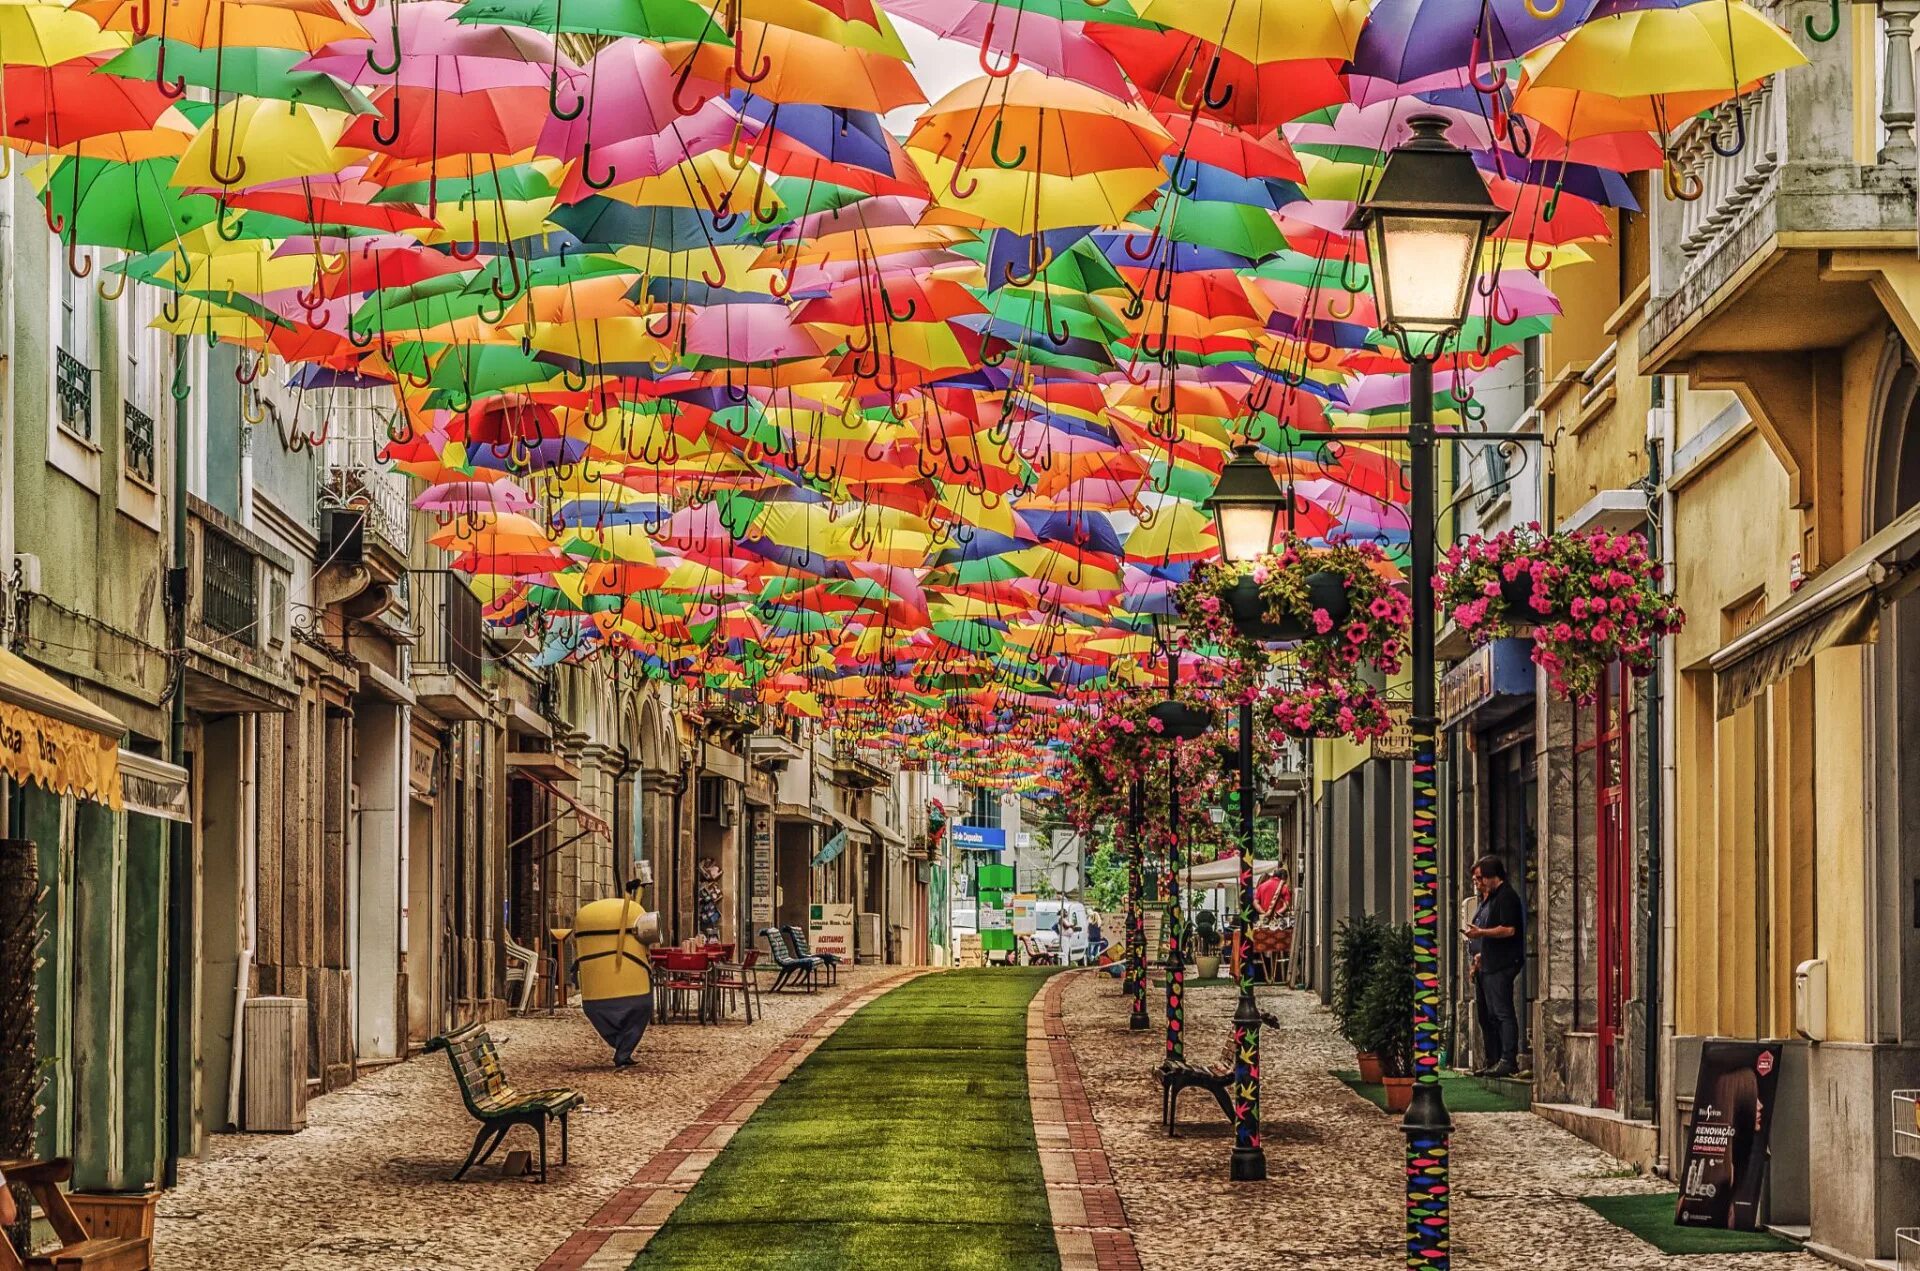 Самые яркие достопримечательности. Агеда Португалия. Аллея зонтиков в Португалии. Улица парящих зонтиков, Агеда, Португалия. Агеда Португалия достопримечательности.